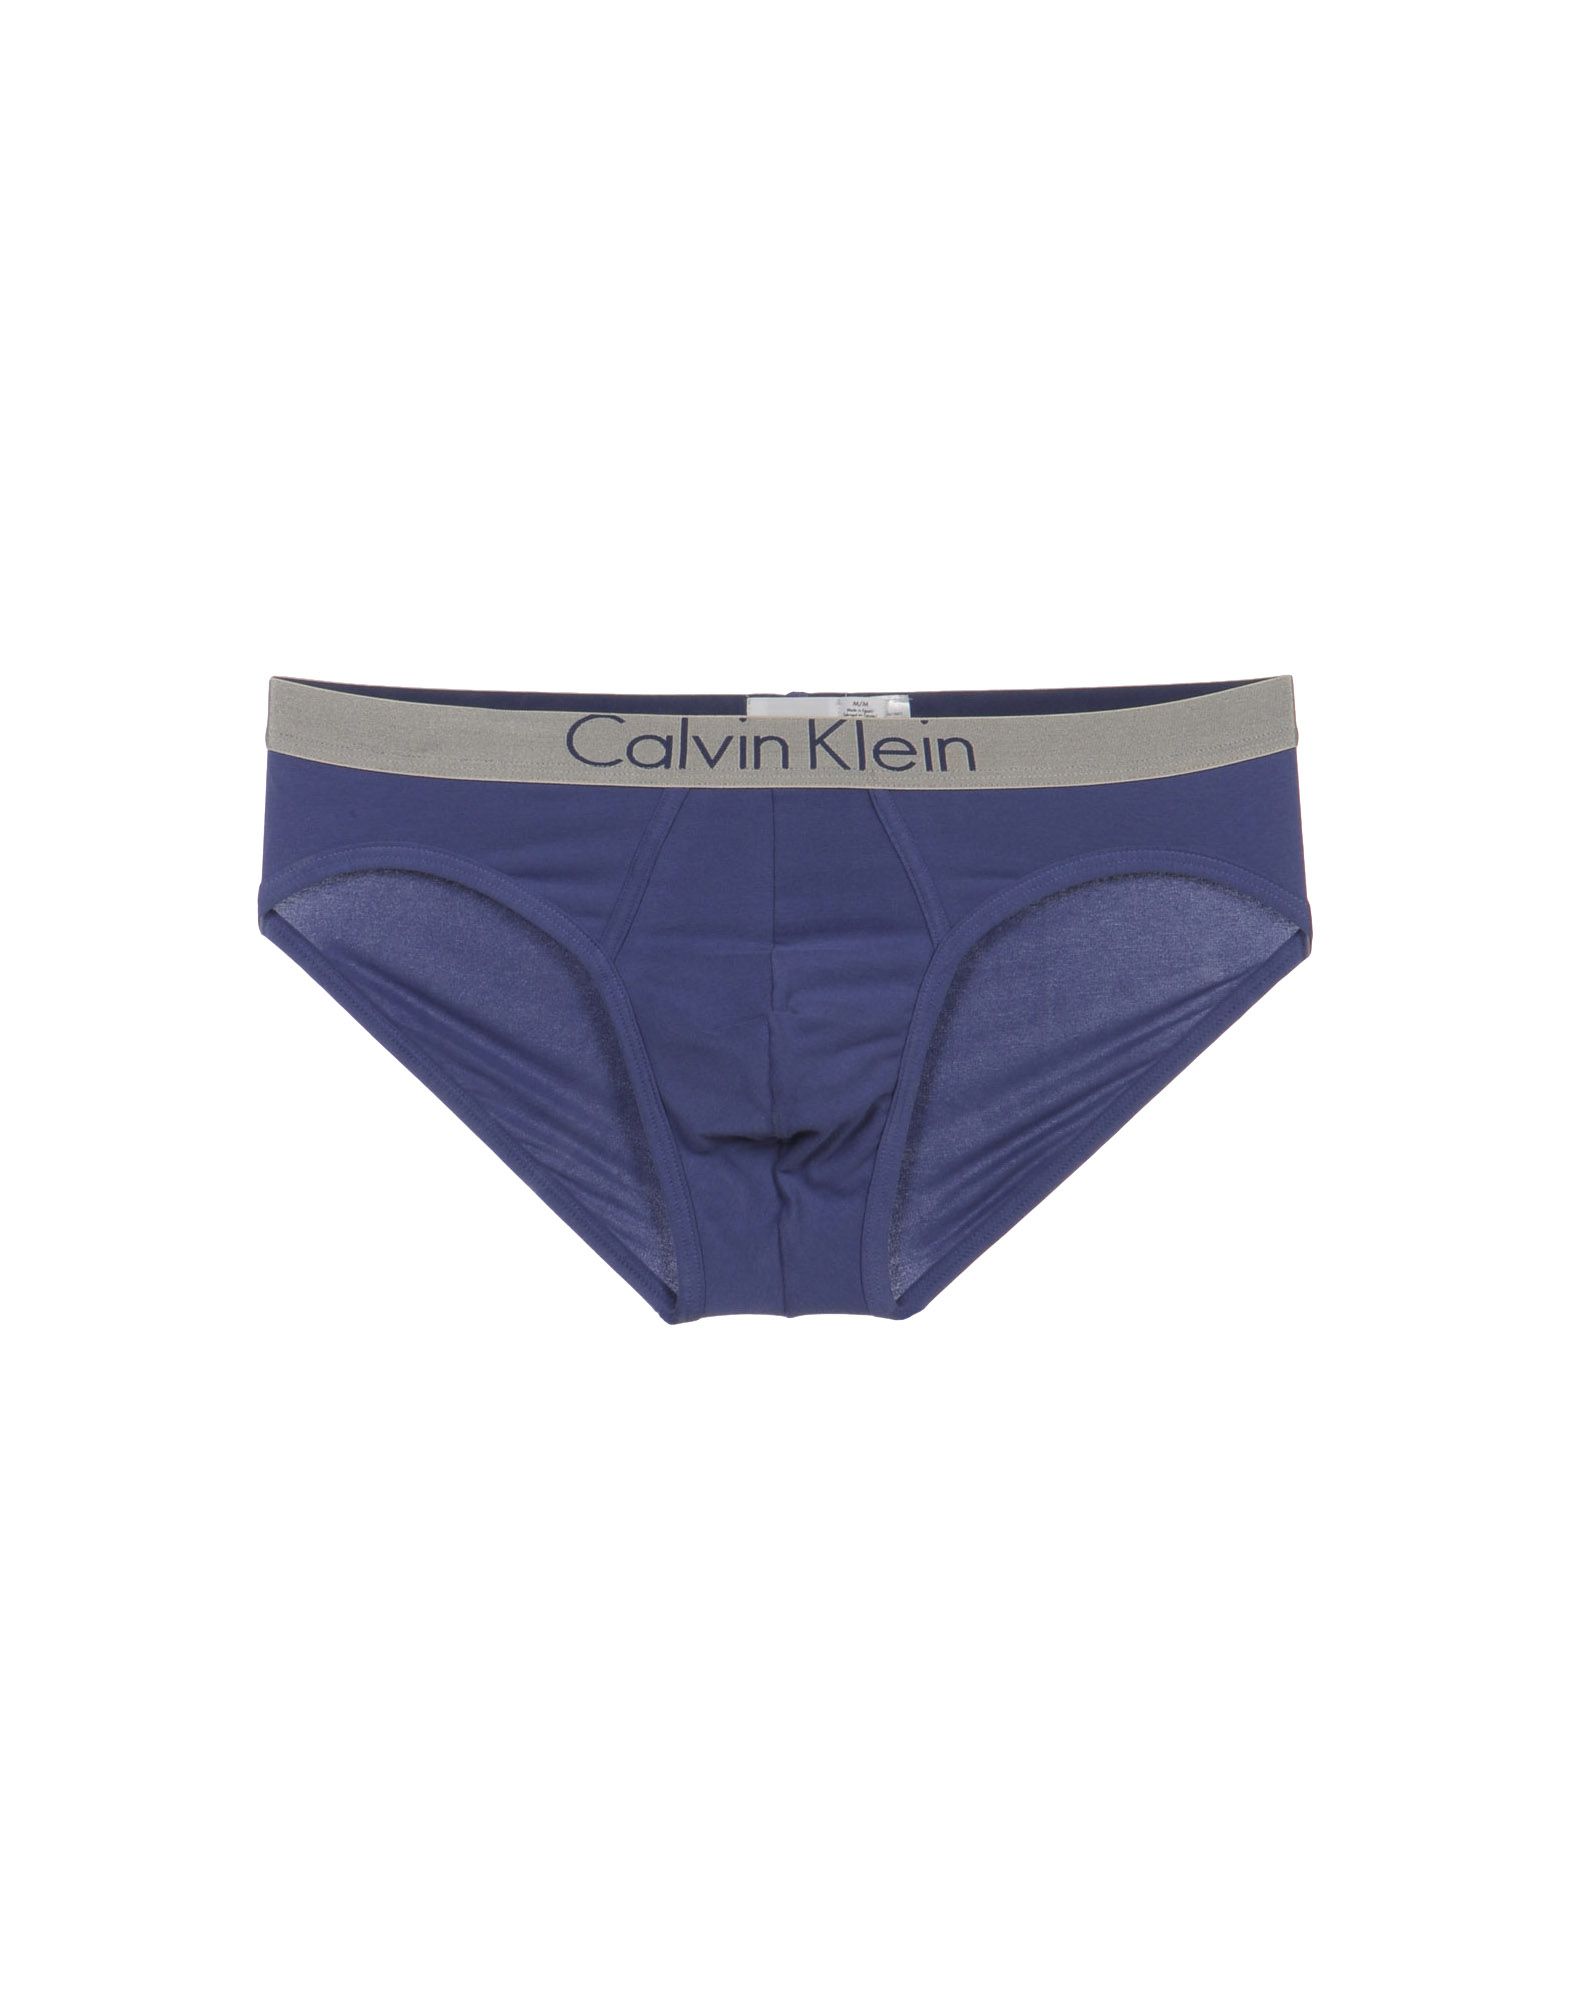 Foto Calvin Klein Underwear Slips Hombre Azul marino